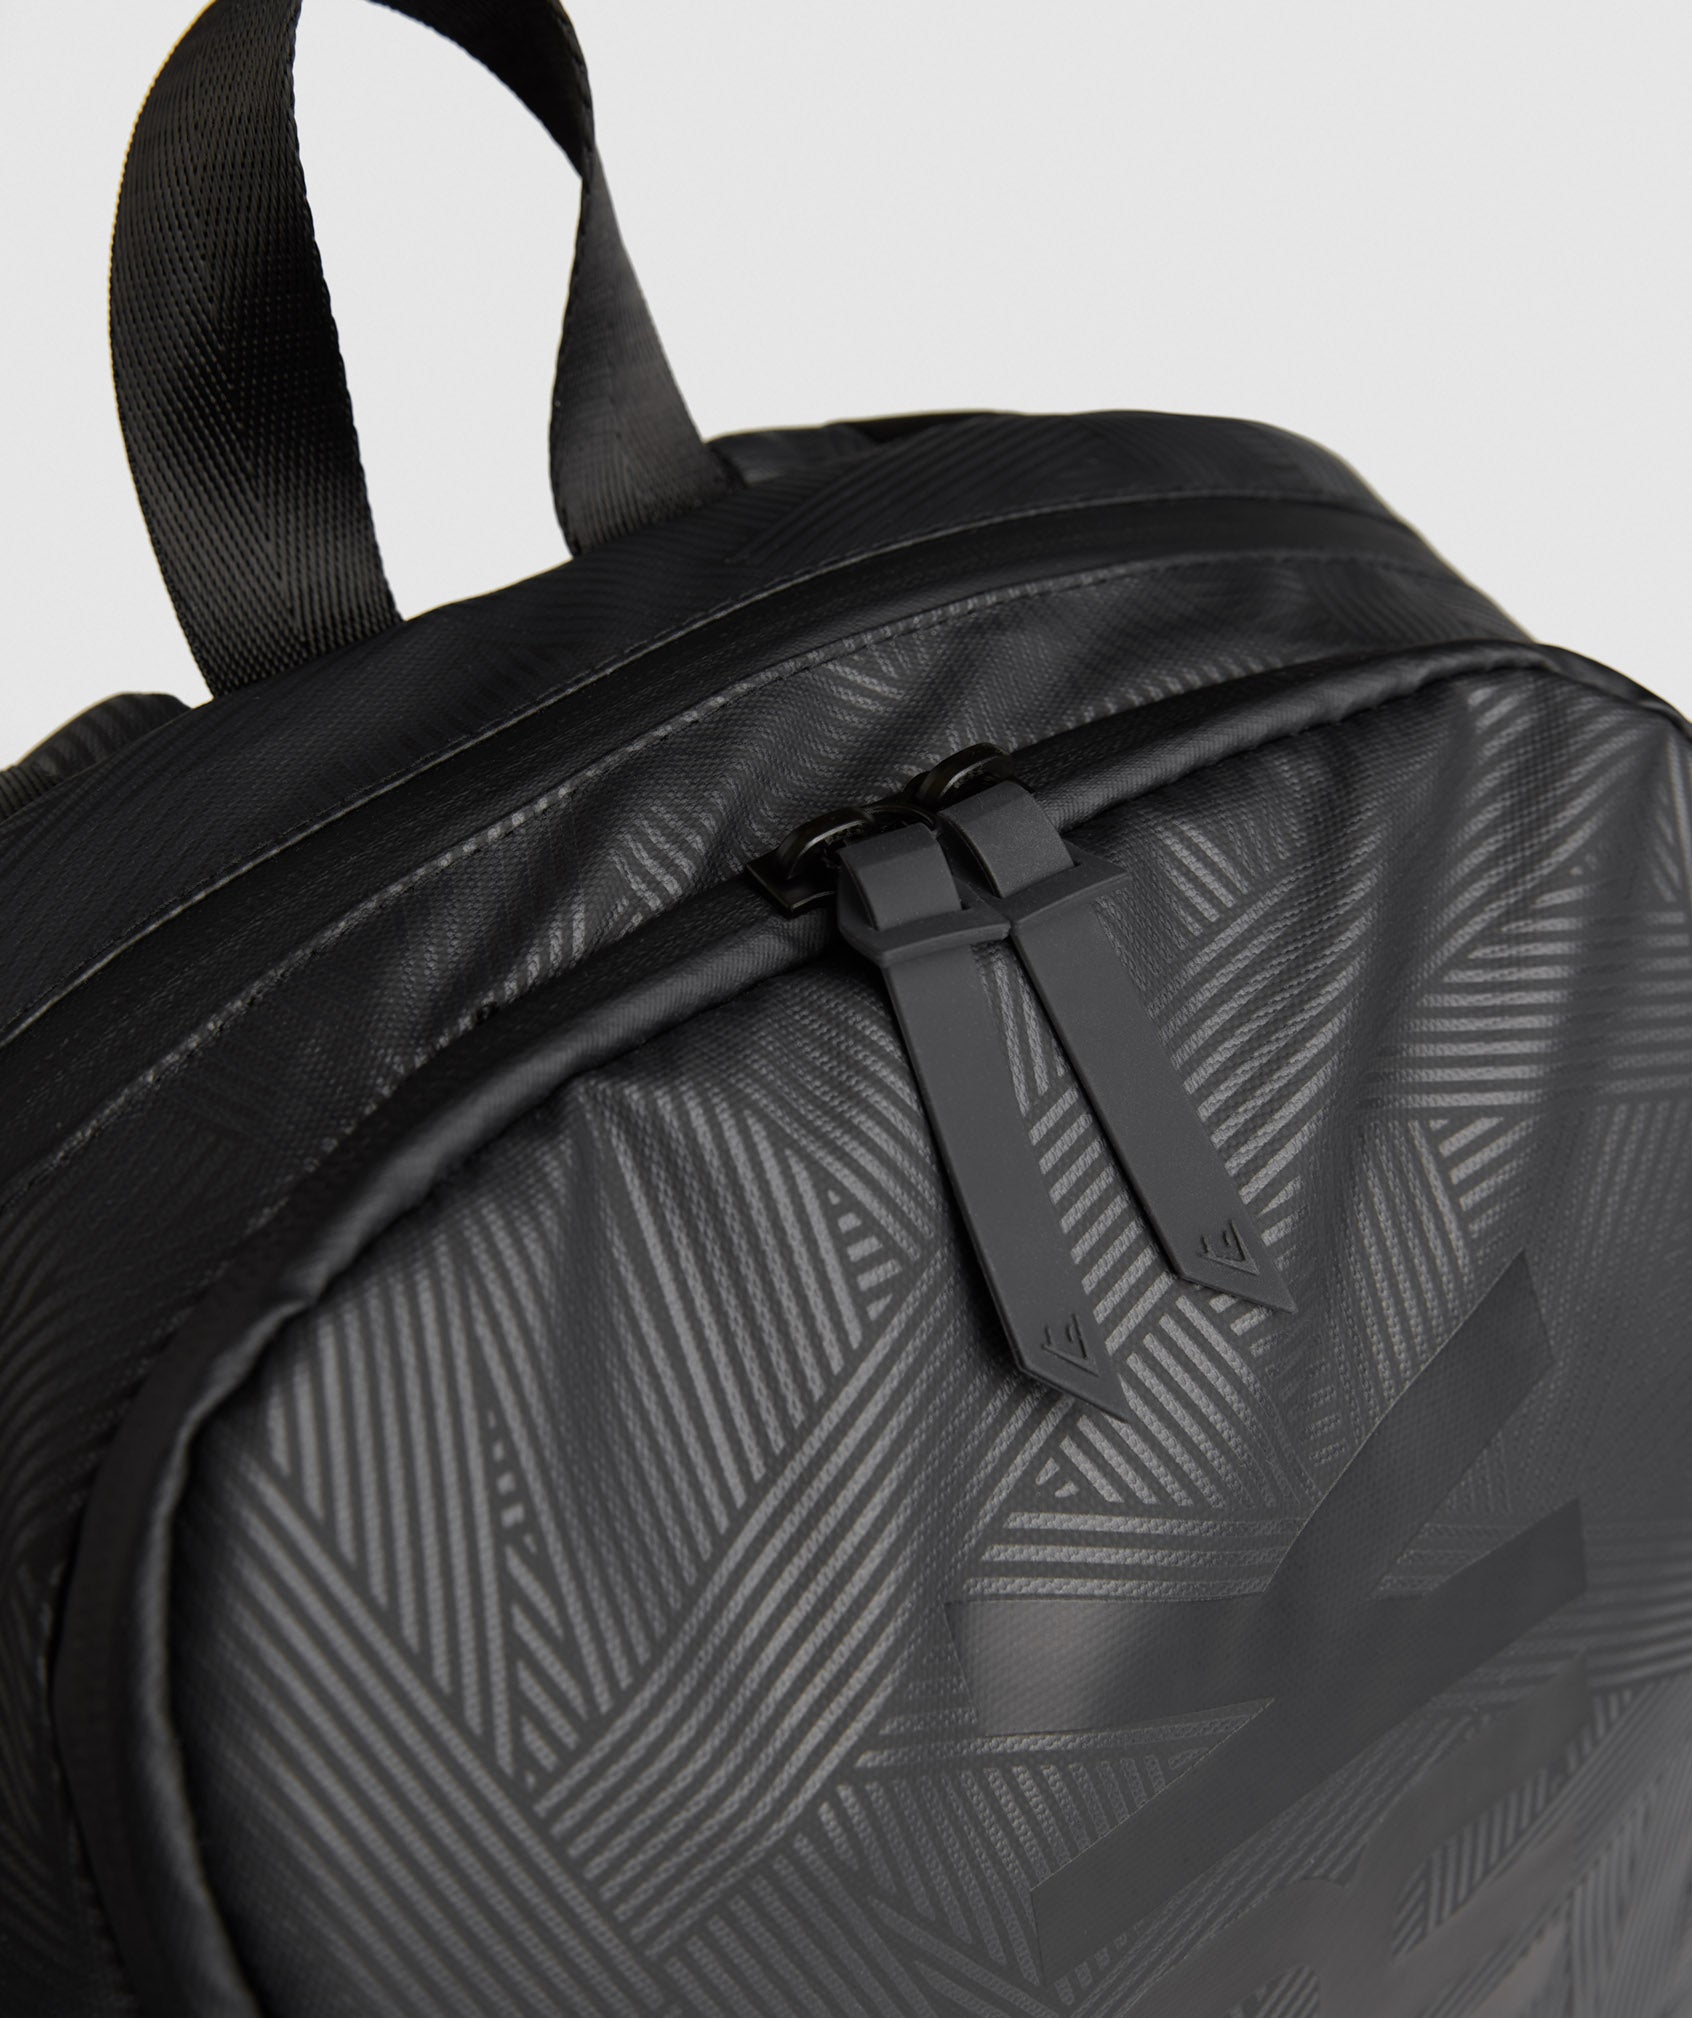 X-Series 0.3 Backpack in Black Print - view 9